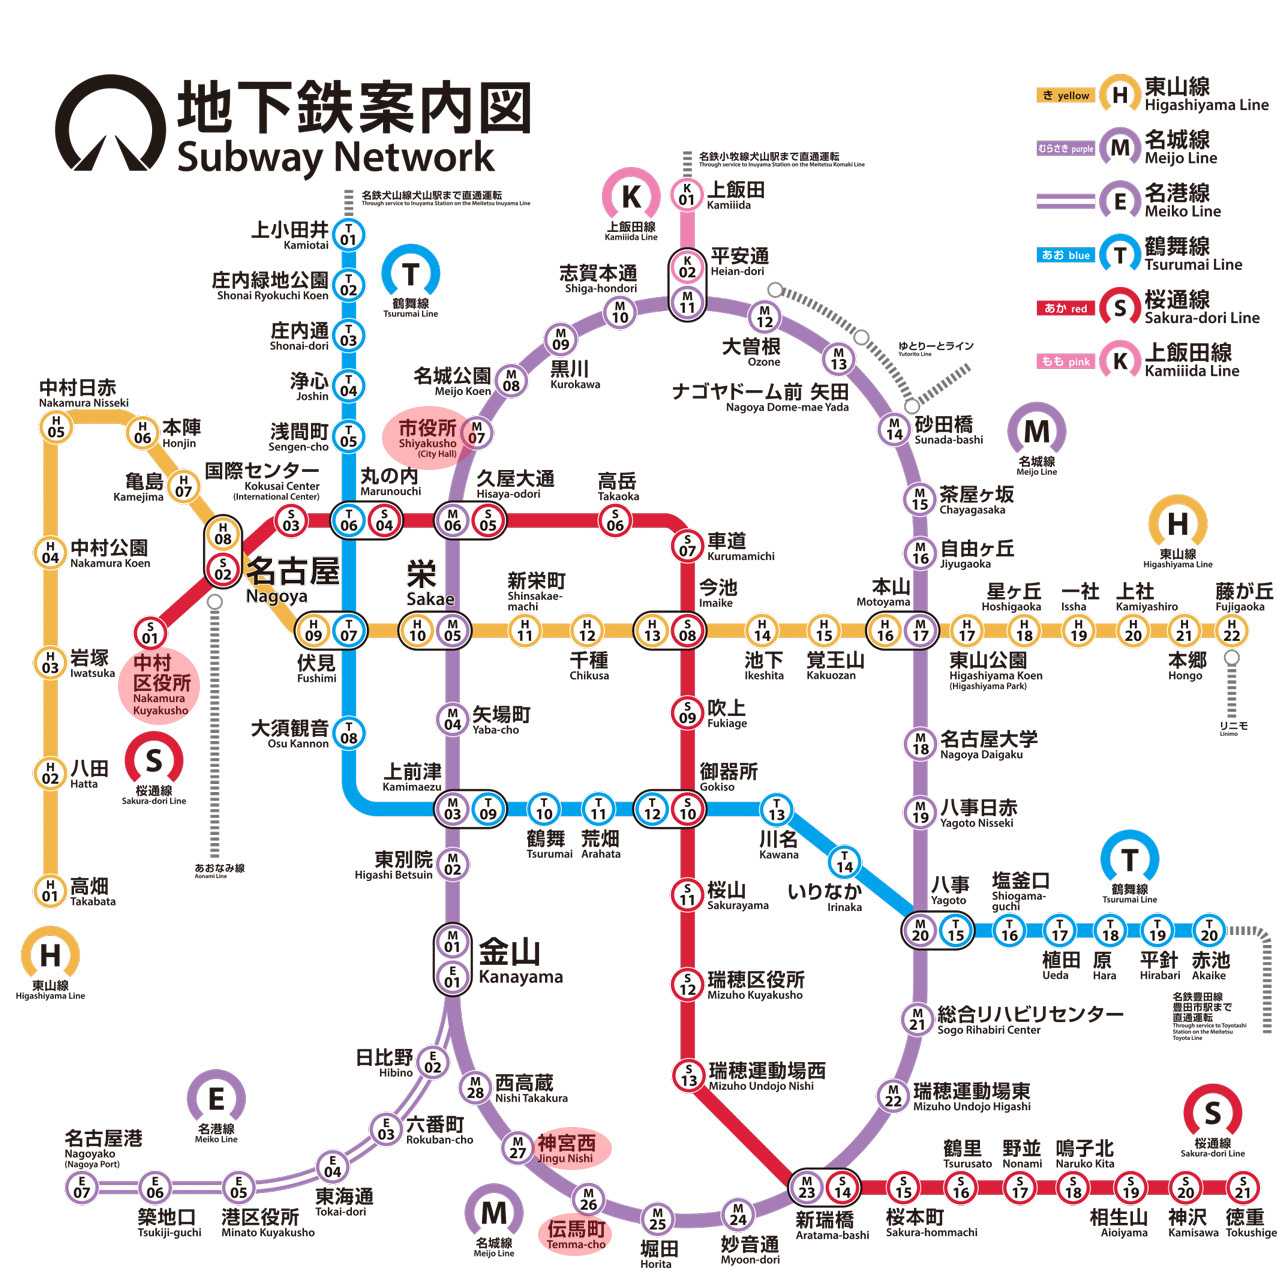 ▲名古屋市交通局の地下鉄路線図。赤枠で示した4つの駅が2023年に駅名変更される。